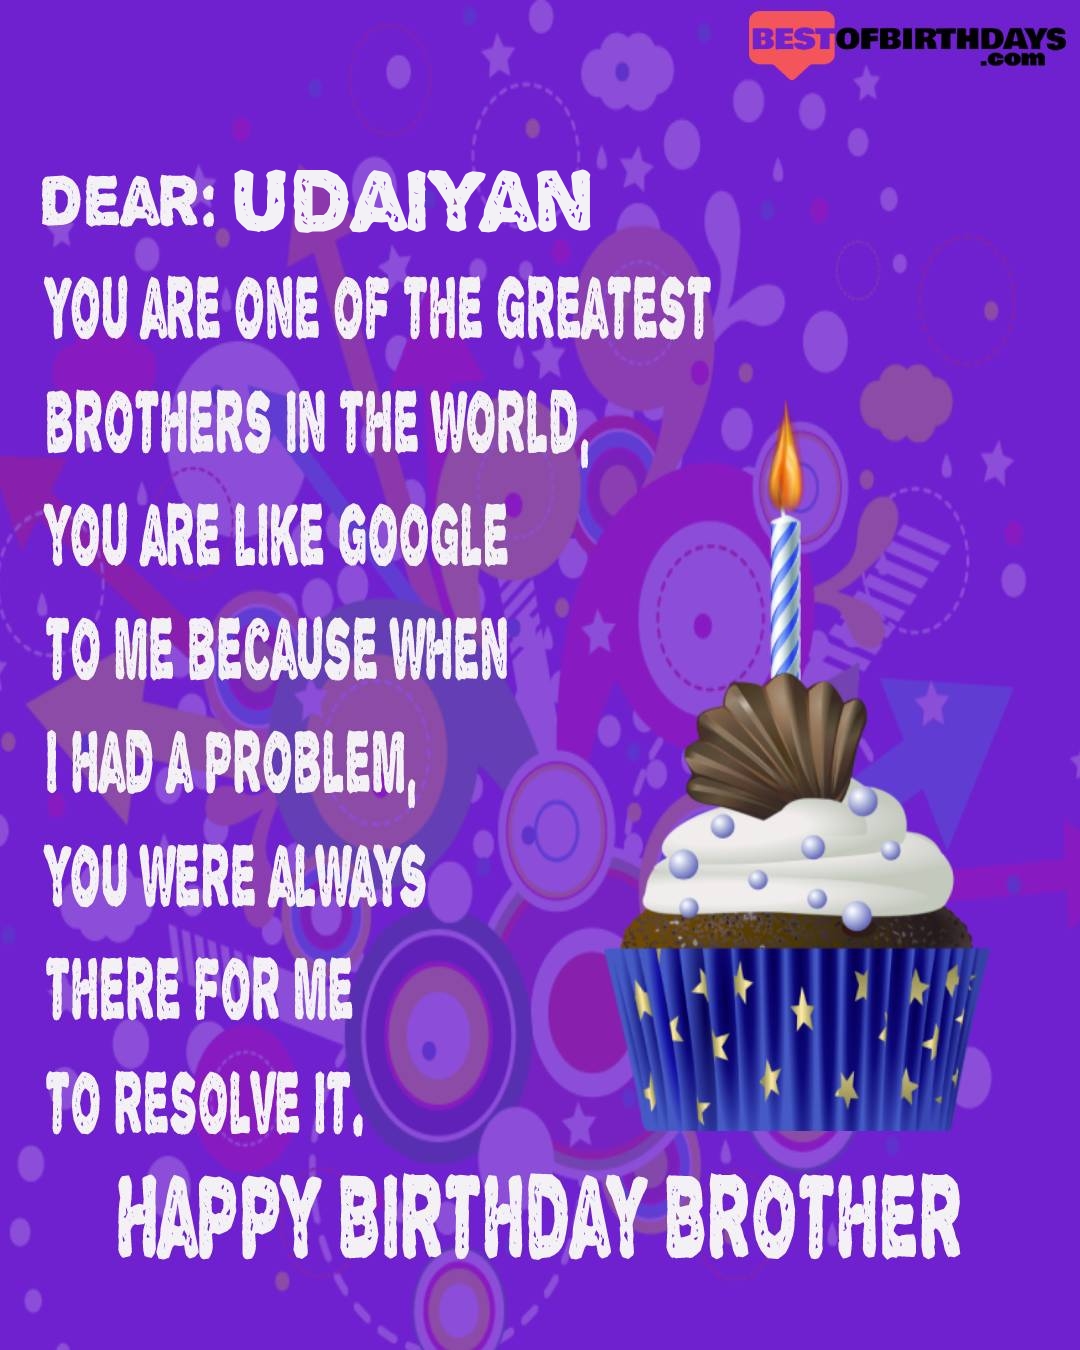 Happy birthday udaiyan bhai brother bro